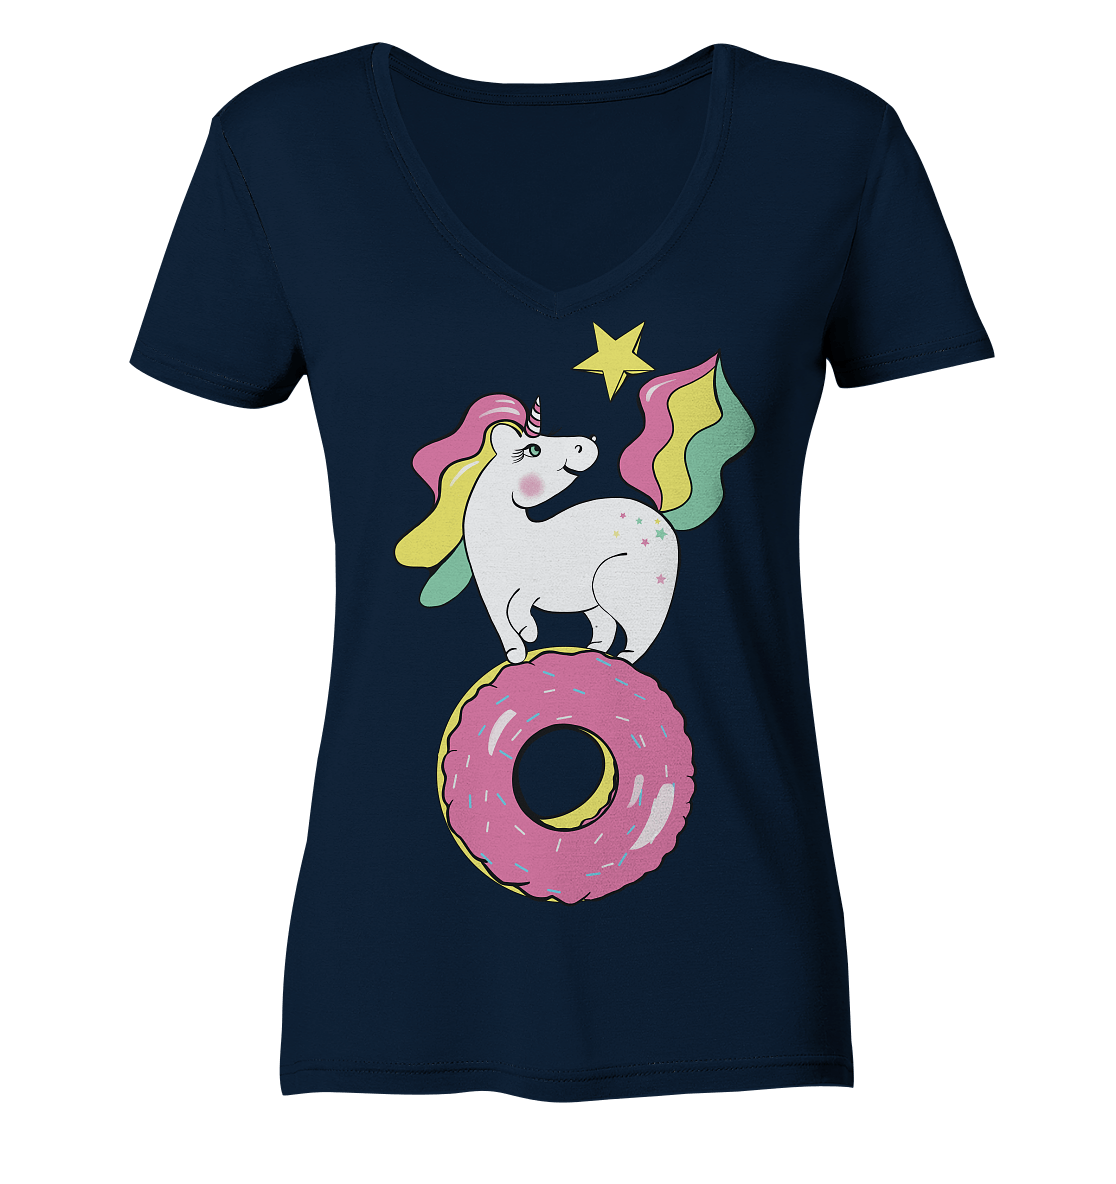 einhorn t shirt in navy unicorn mit donut t shirt einhorn in navy V-neck